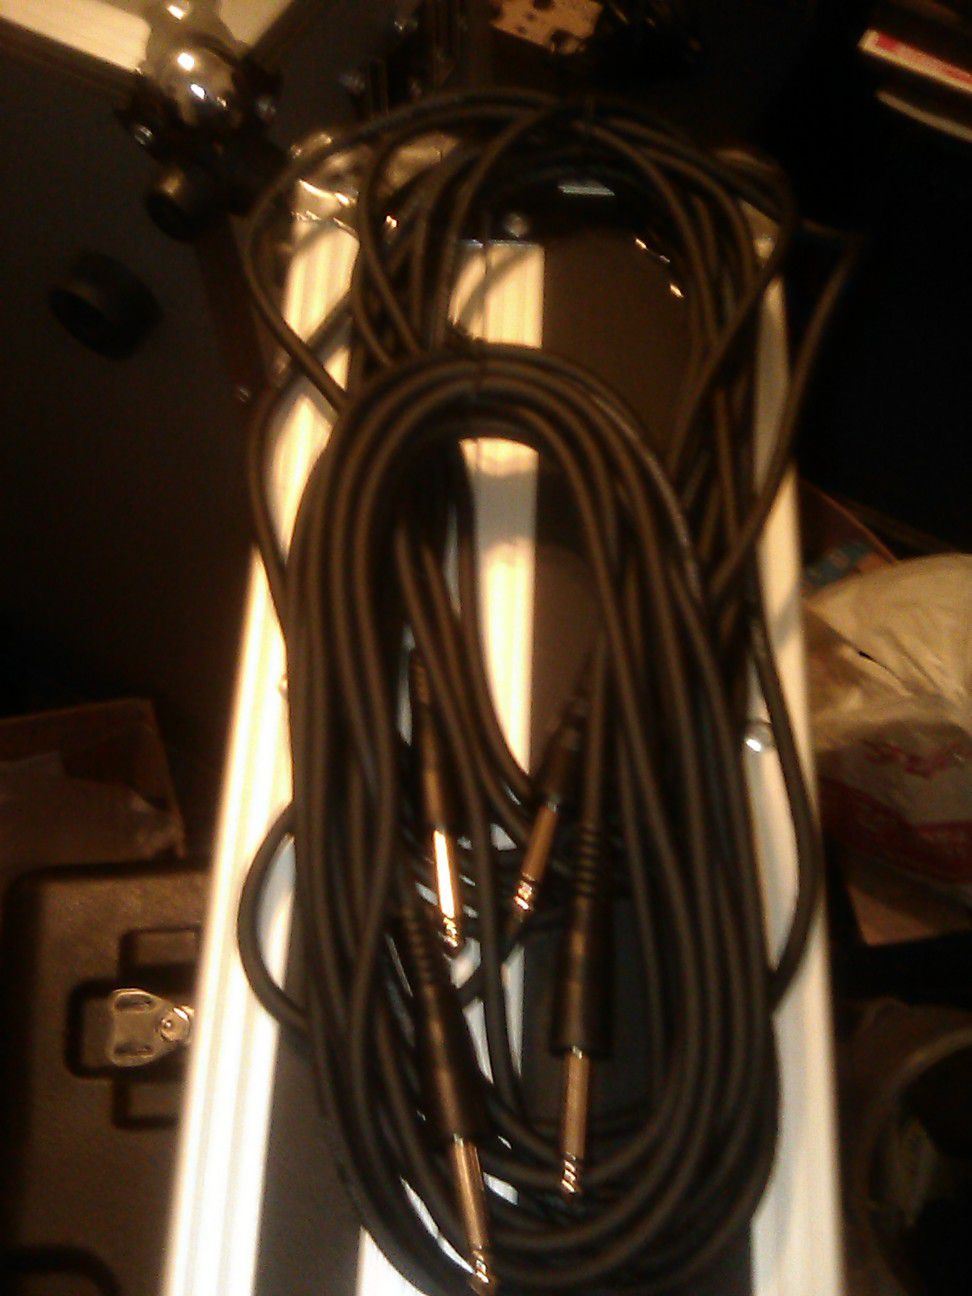 2 brand new Fender 20ft speaker cables